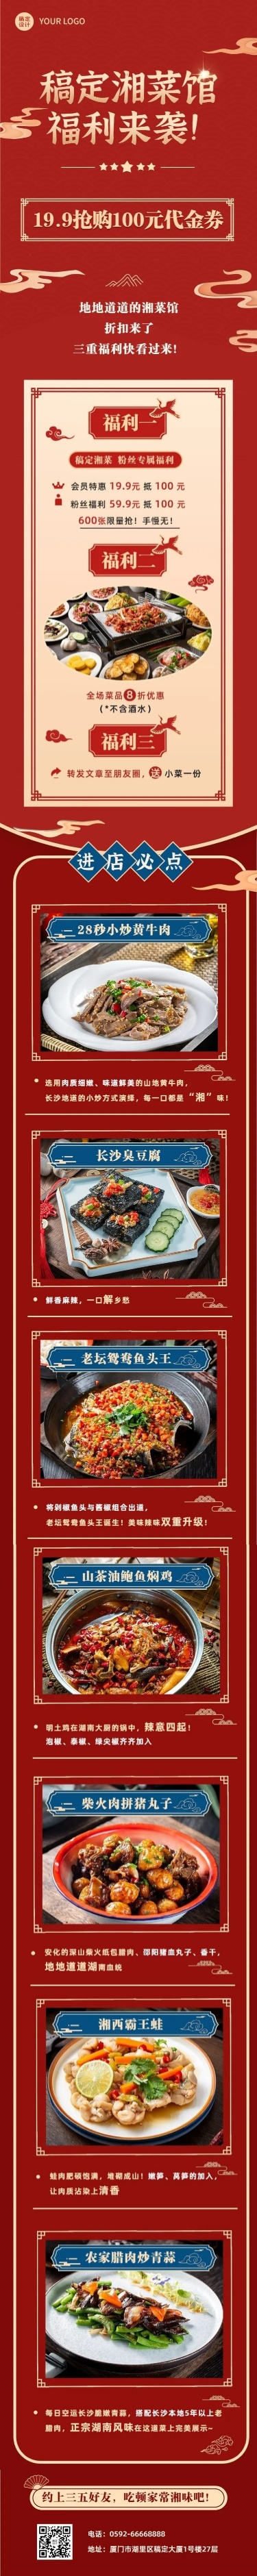 餐饮美食湘菜促销中国风文章长图